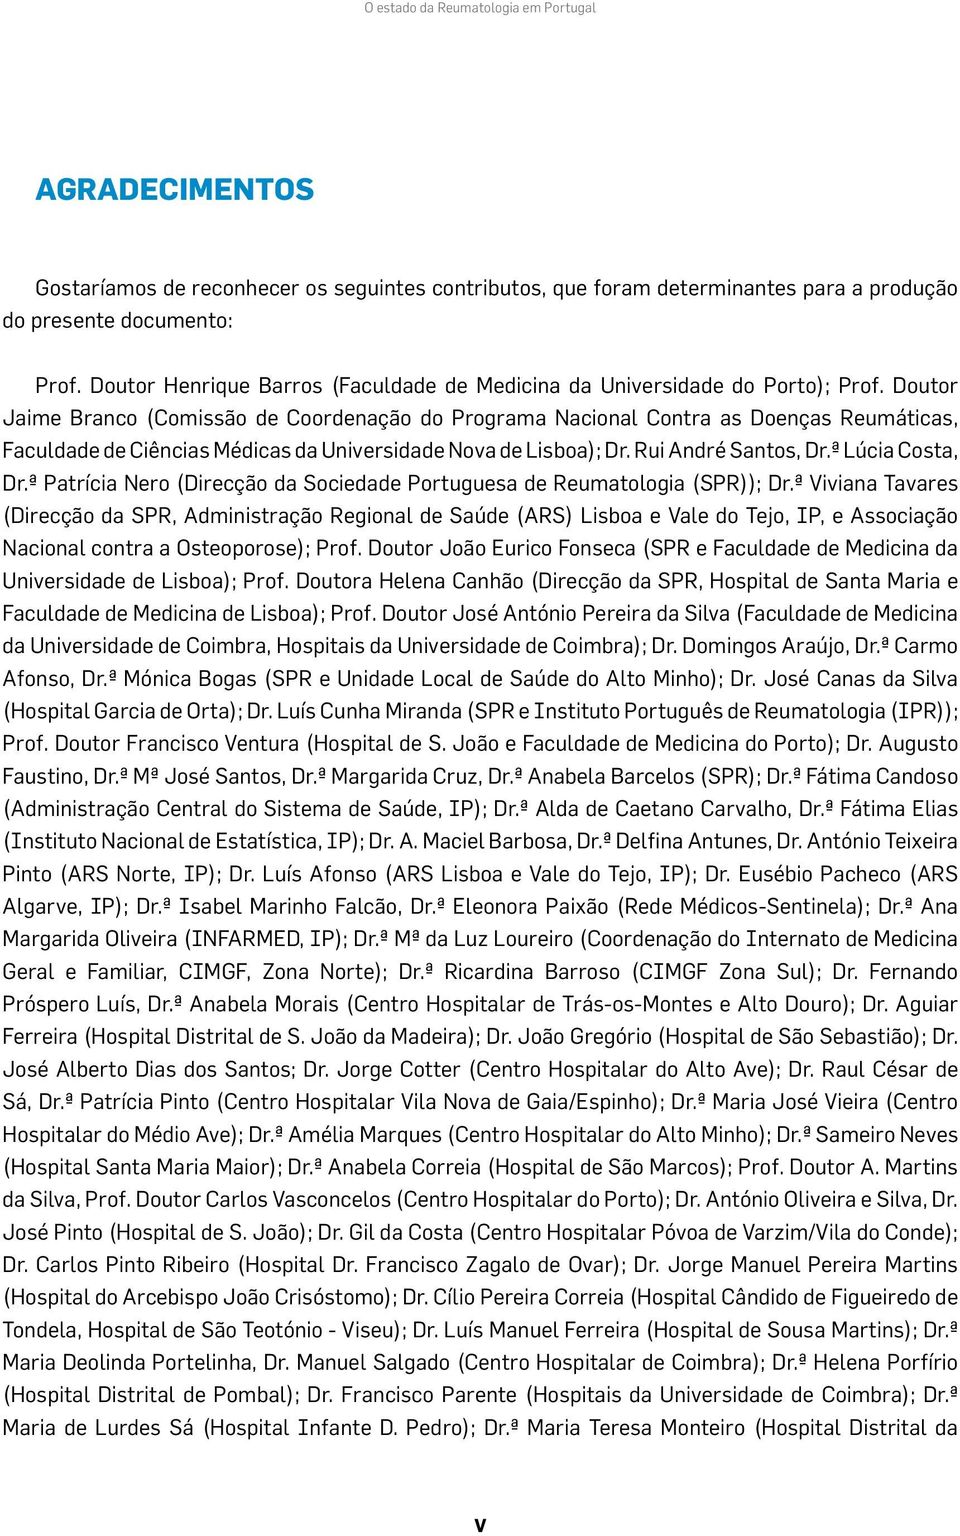 Doutor Jaime Branco (Comissão de Coordenação do Programa Nacional Contra as Doenças Reumáticas, Faculdade de Ciências Médicas da Universidade Nova de Lisboa); Dr. Rui André Santos, Dr.